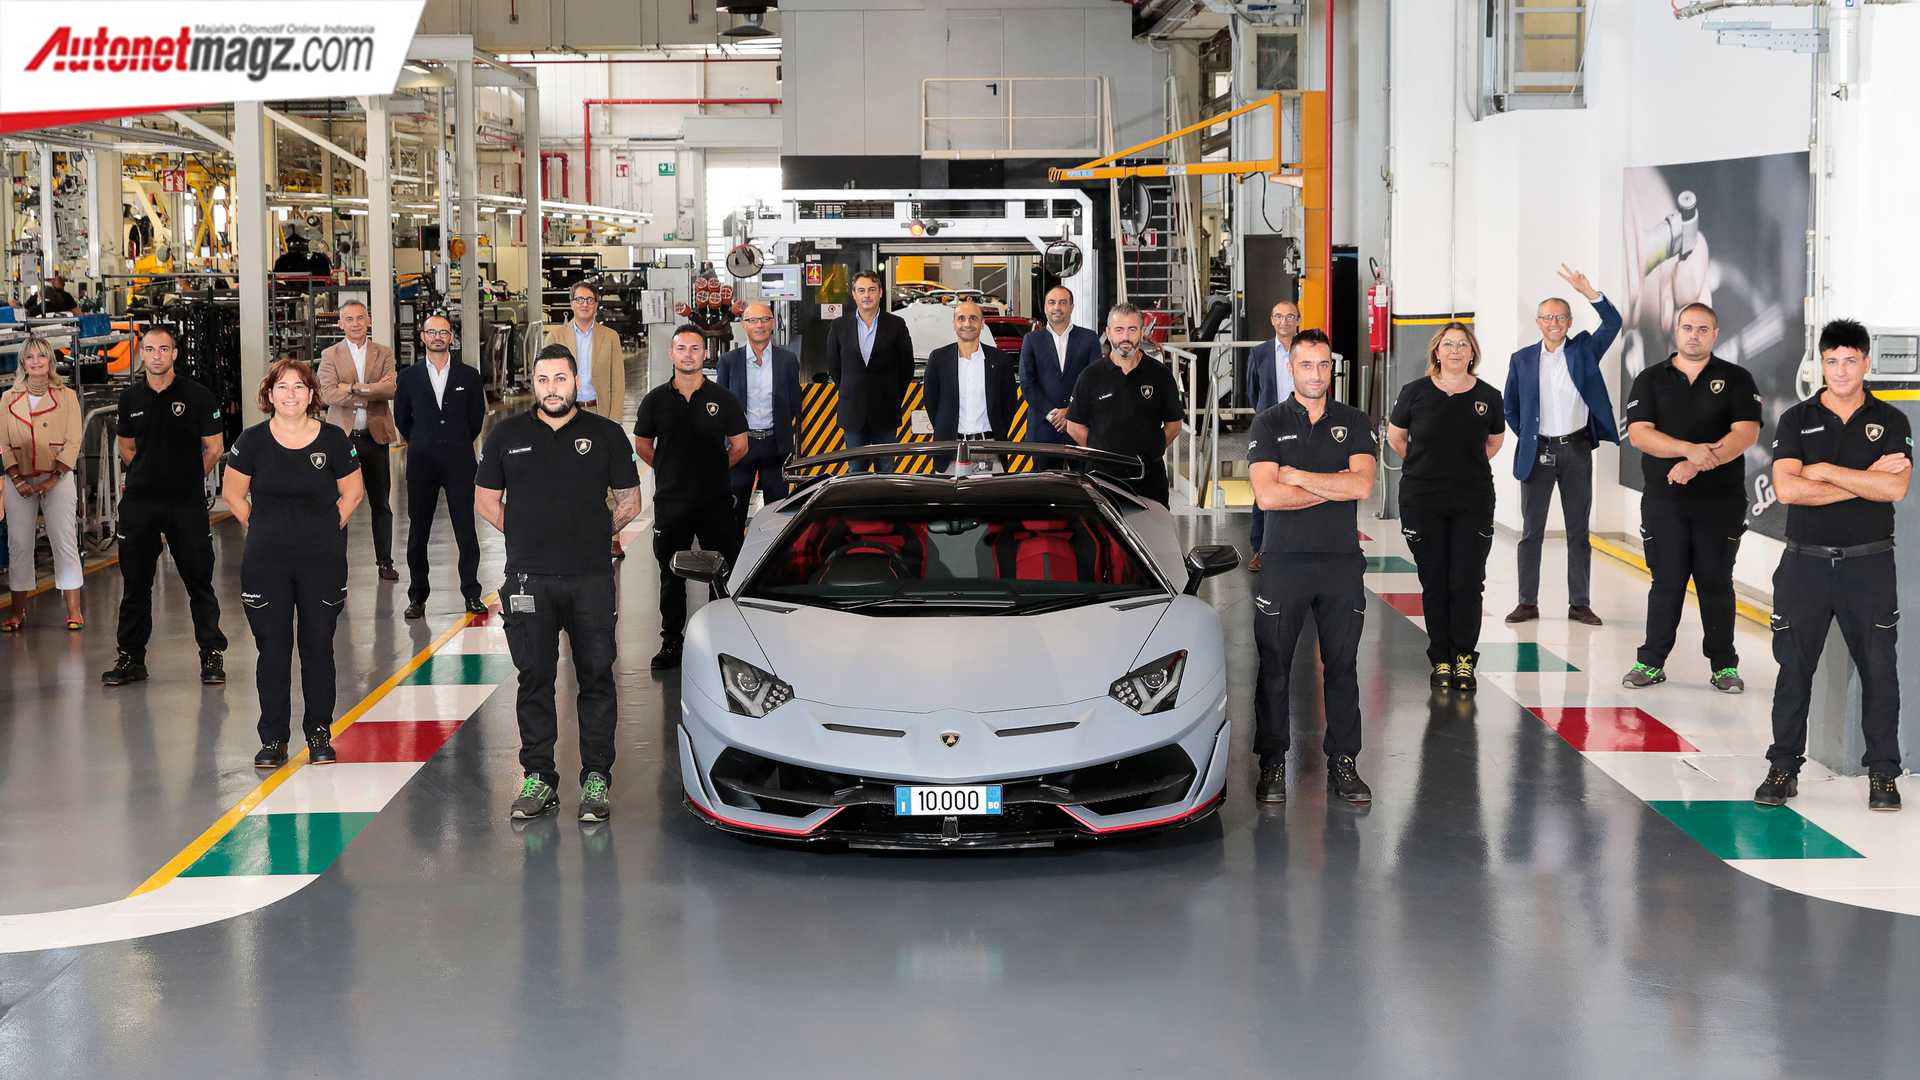 Berita, Lamborghini-Aventador-10K: Lamborghini Berhasil Menjual 10.000 Unit Aventador